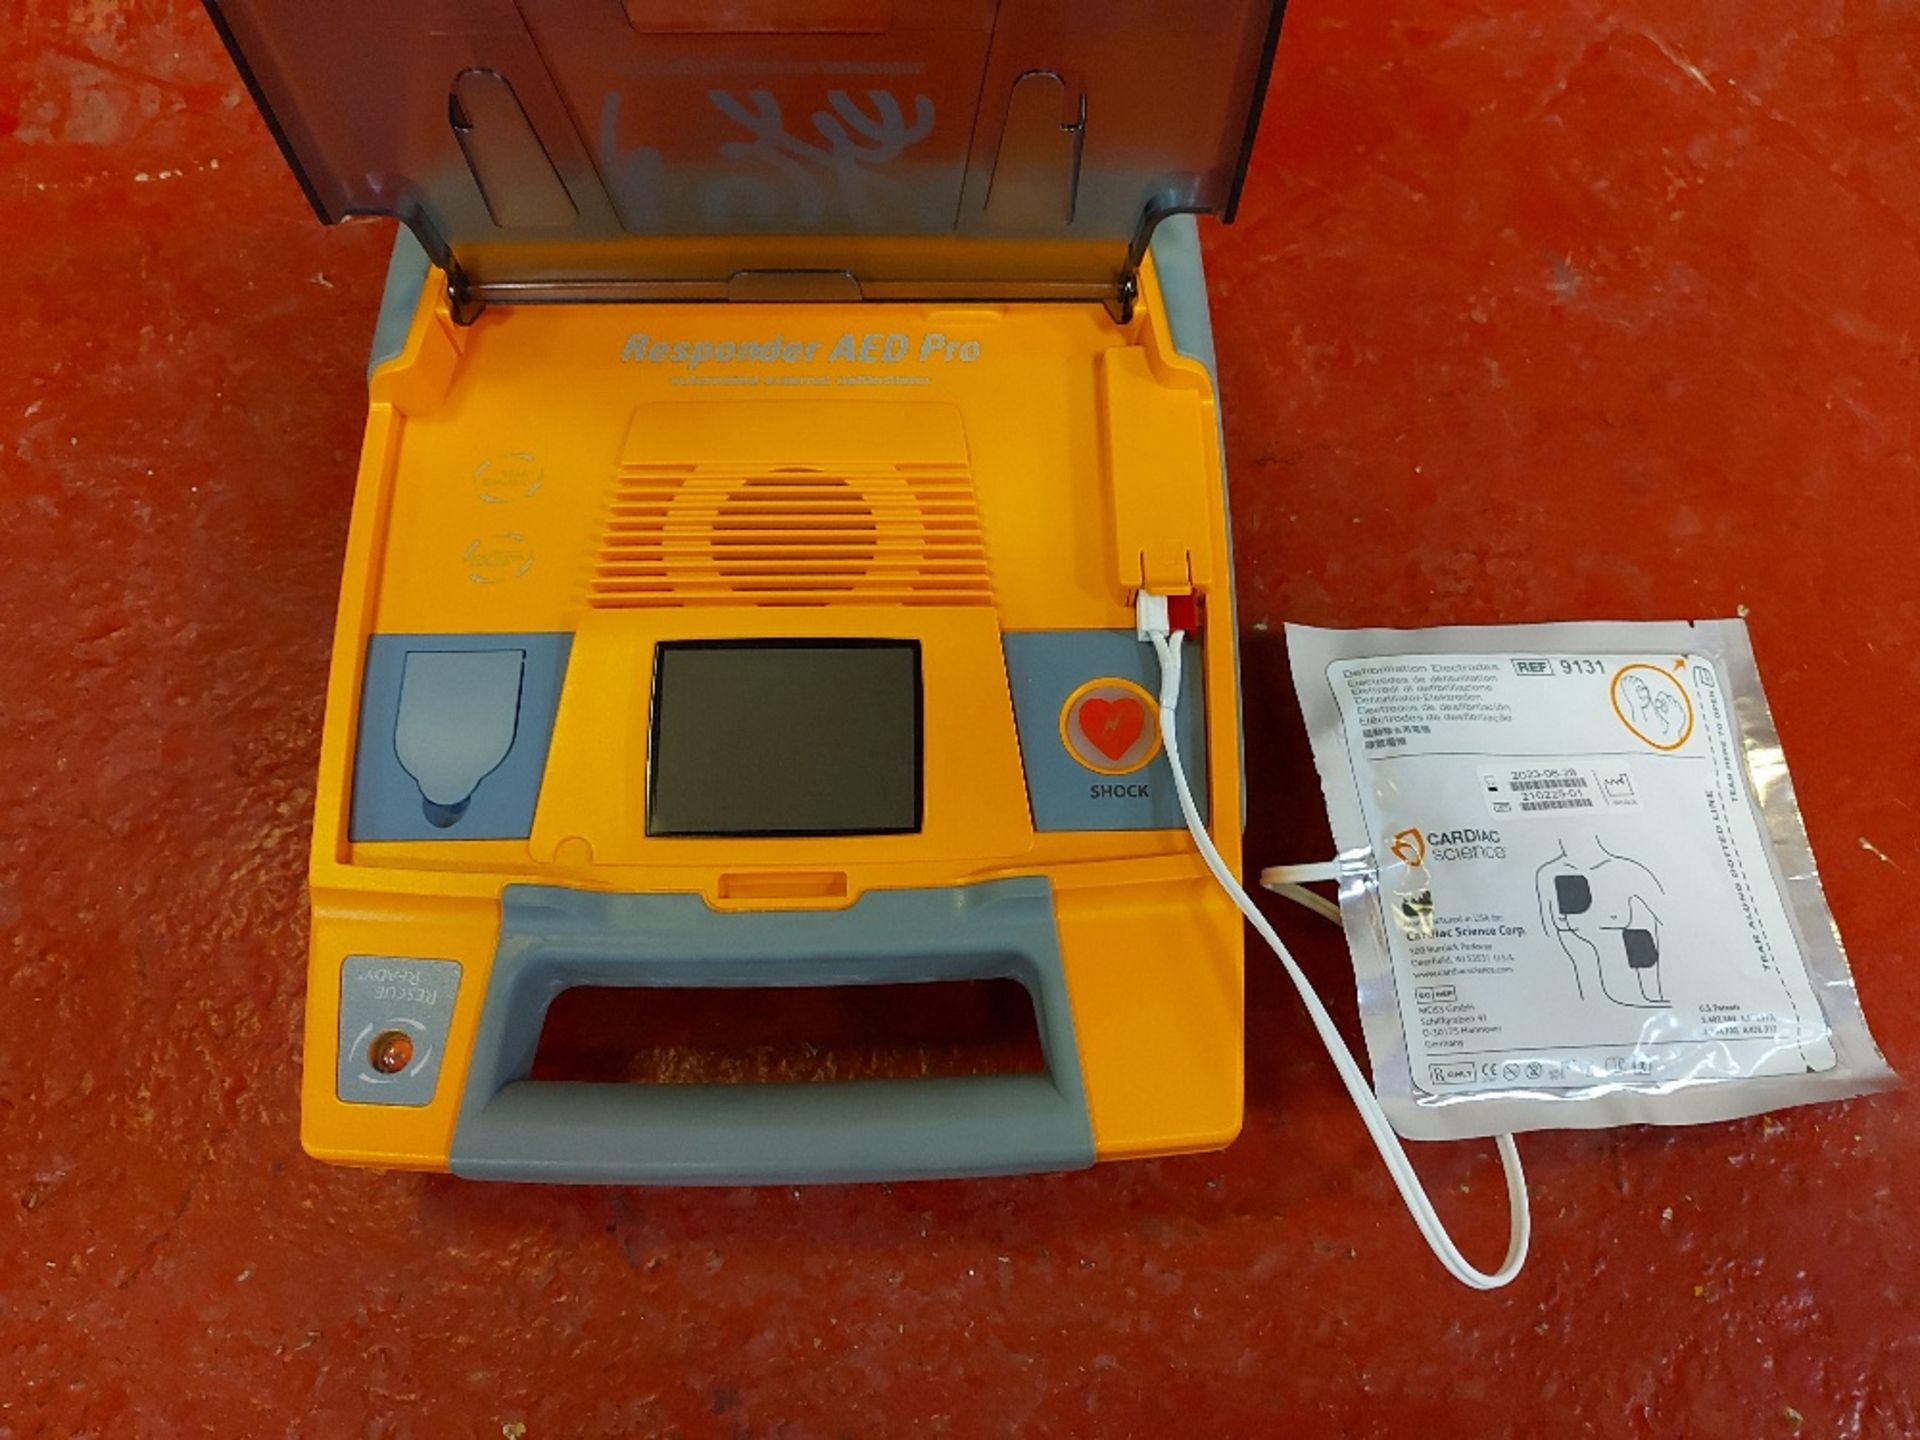 Responder AED Pro Defibrillator - Image 4 of 5